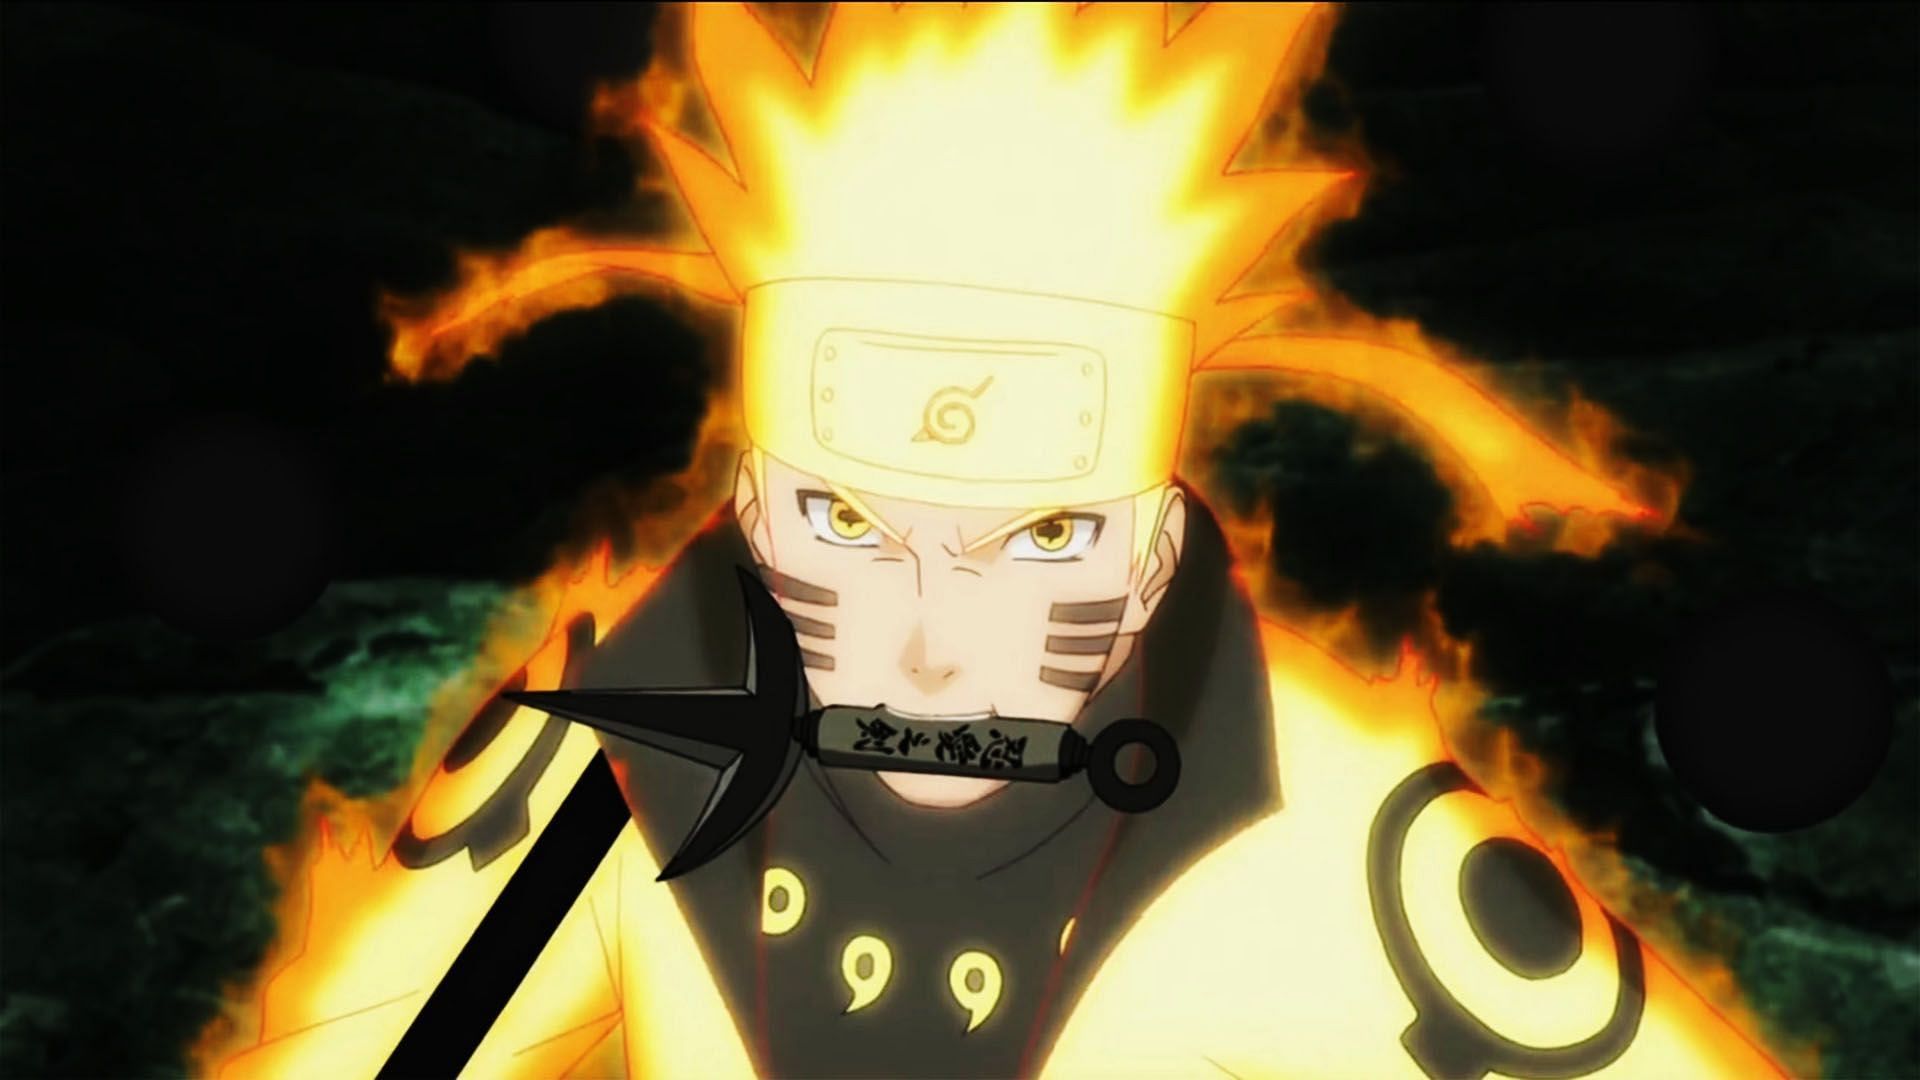 Naruto after awakening Six Paths Sage Mode in Naruto Shippuden (Image via Studio Pierrot)